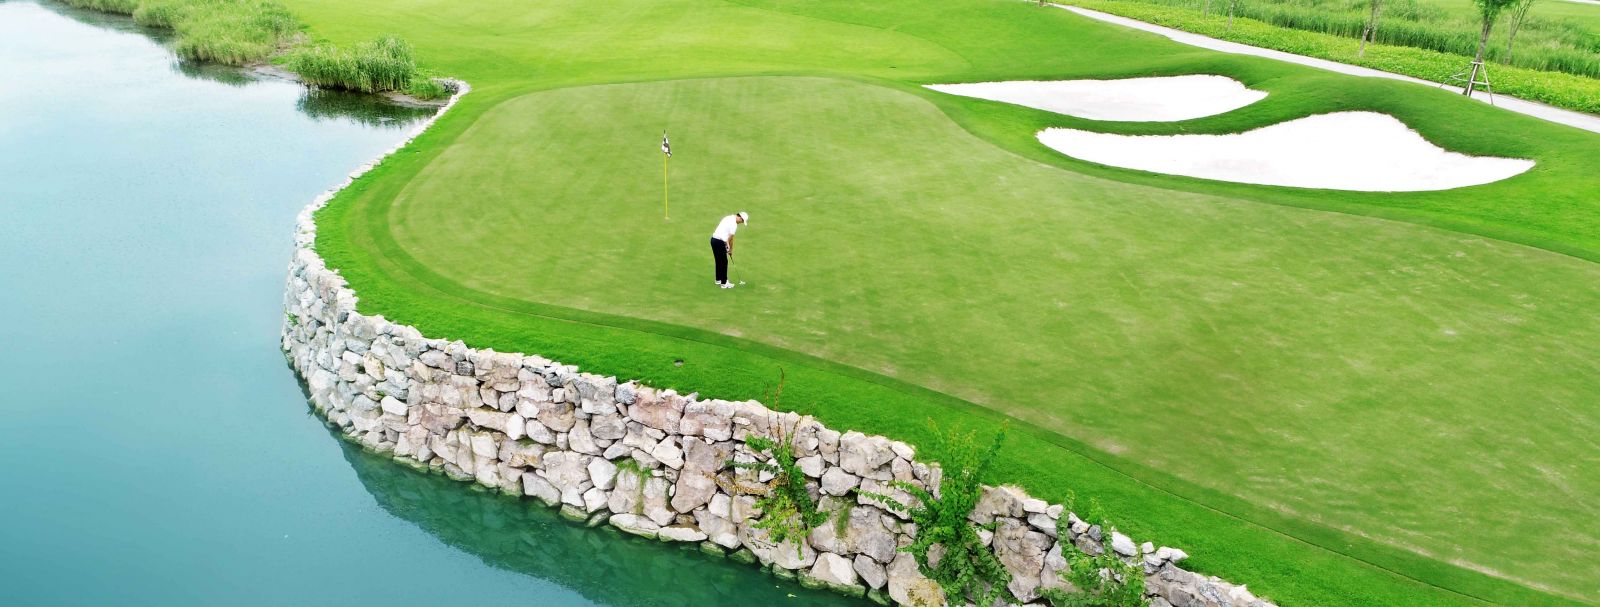 Sân golf Vinpear Hải Phòng là sân golf trên đảo lớn nhất cả nước.